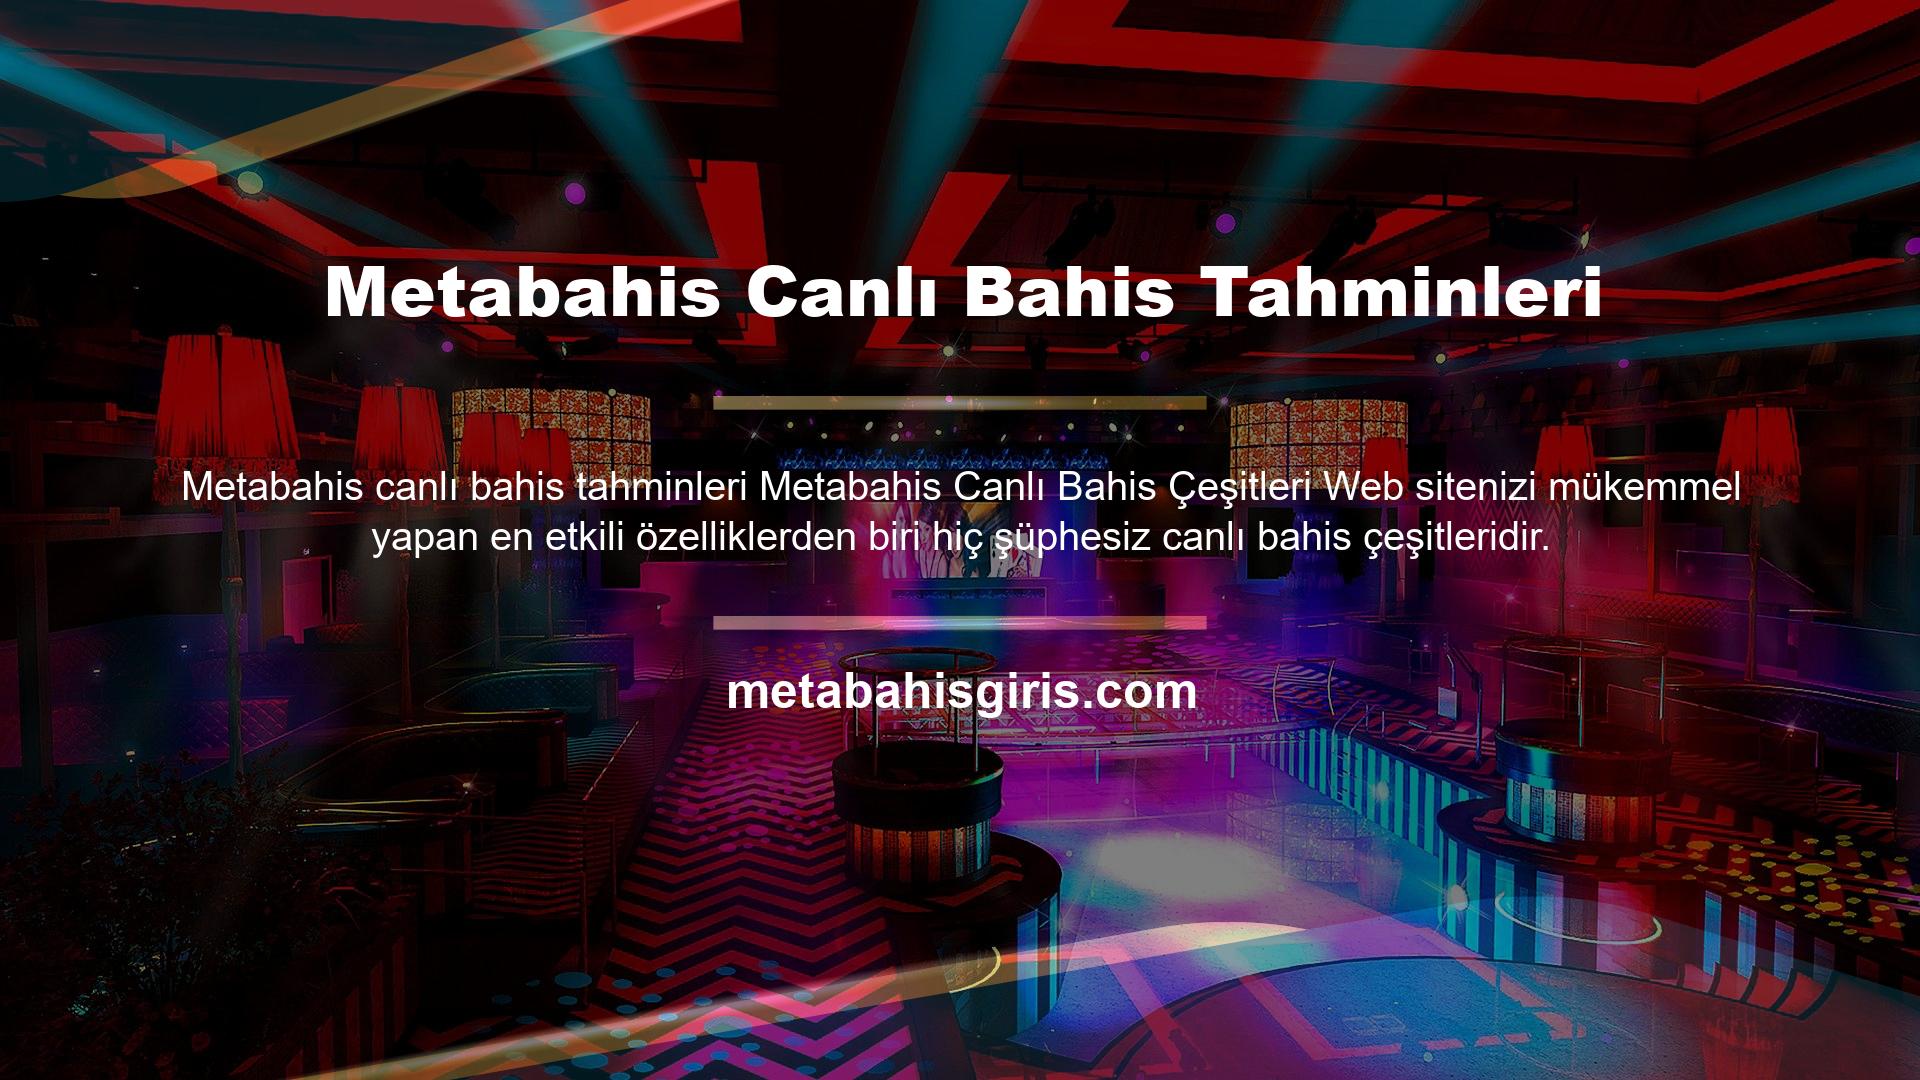 Metabahis her canlı oyun için farklı bahis seçenekleri yayınlıyor ve canlı casino temalı seçenekler de sunuyor